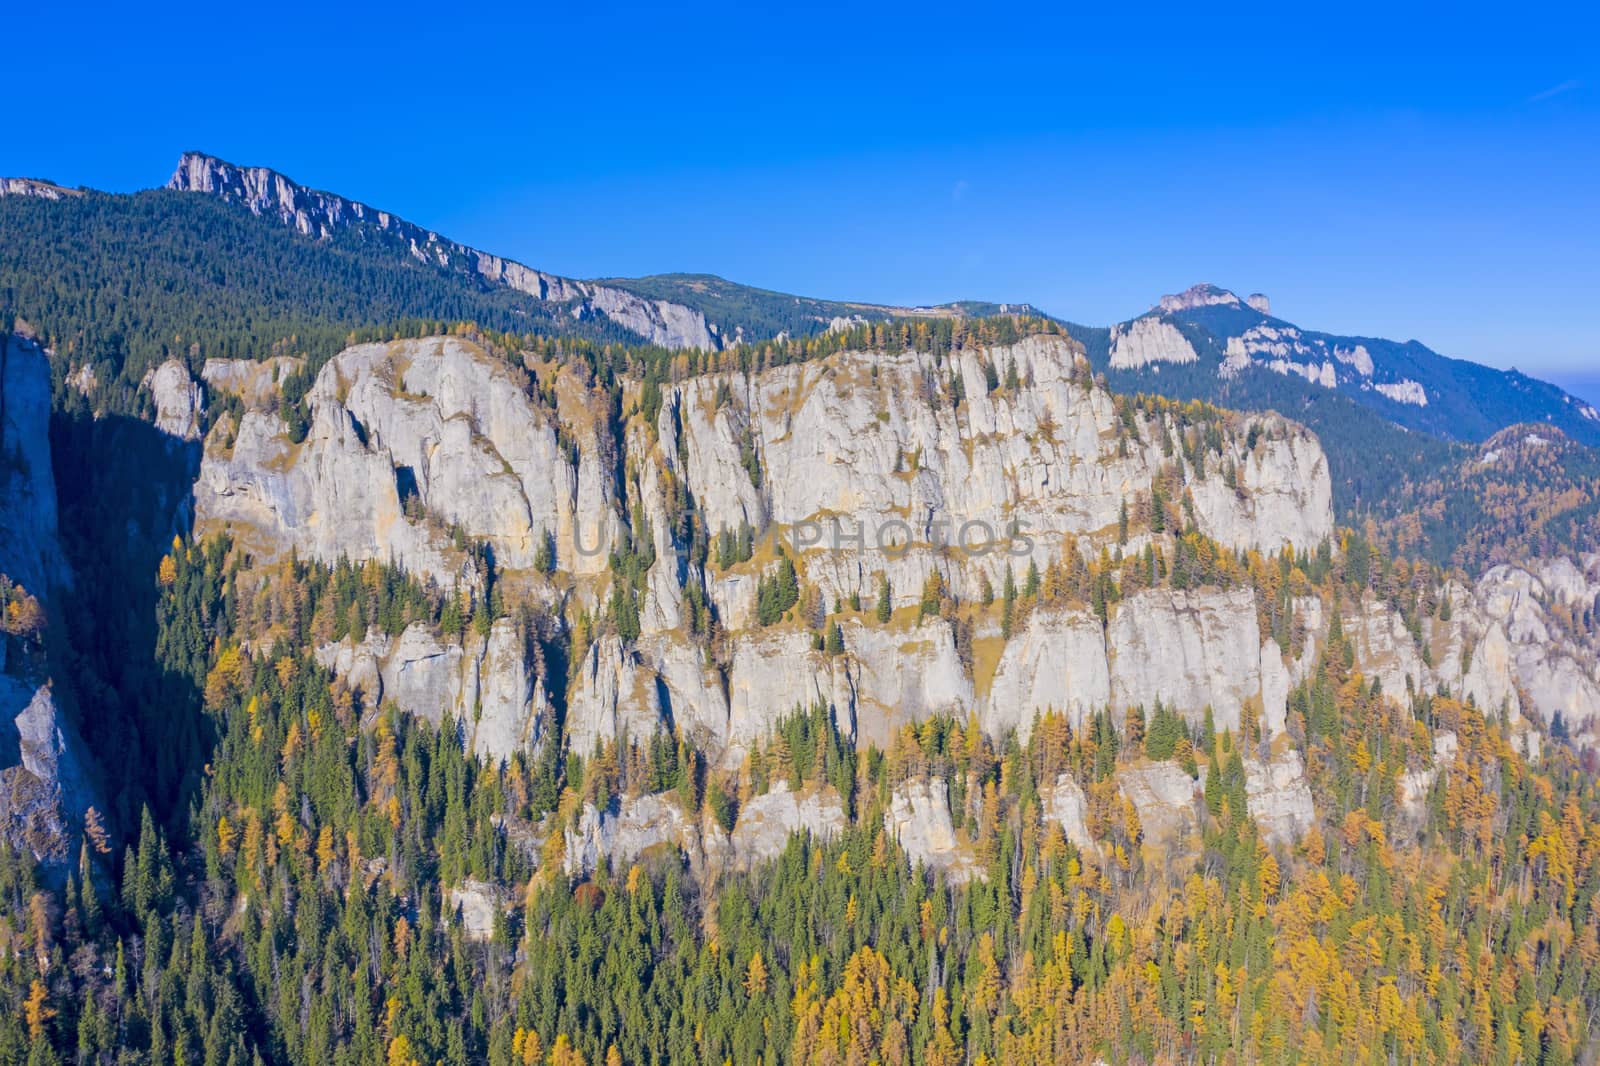 Late autumn landscape, coniferous forest on rocky mountain, Romanian Carpathians